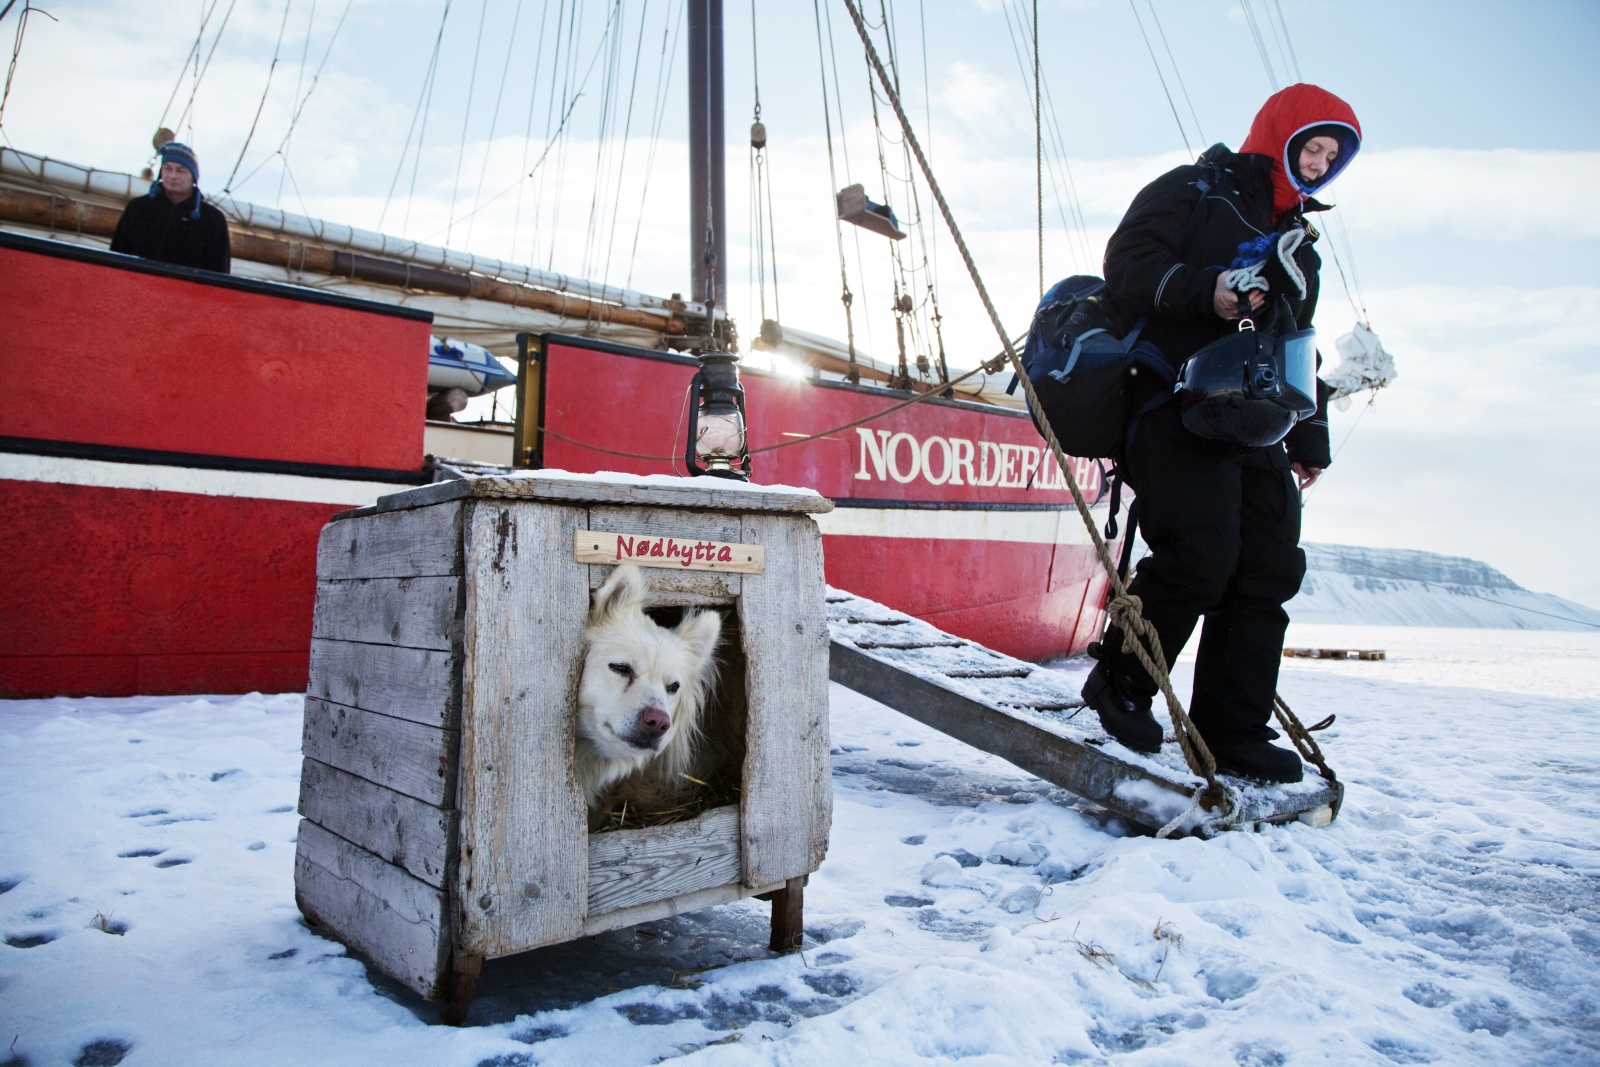 Сторожевая собака в будке около корабля